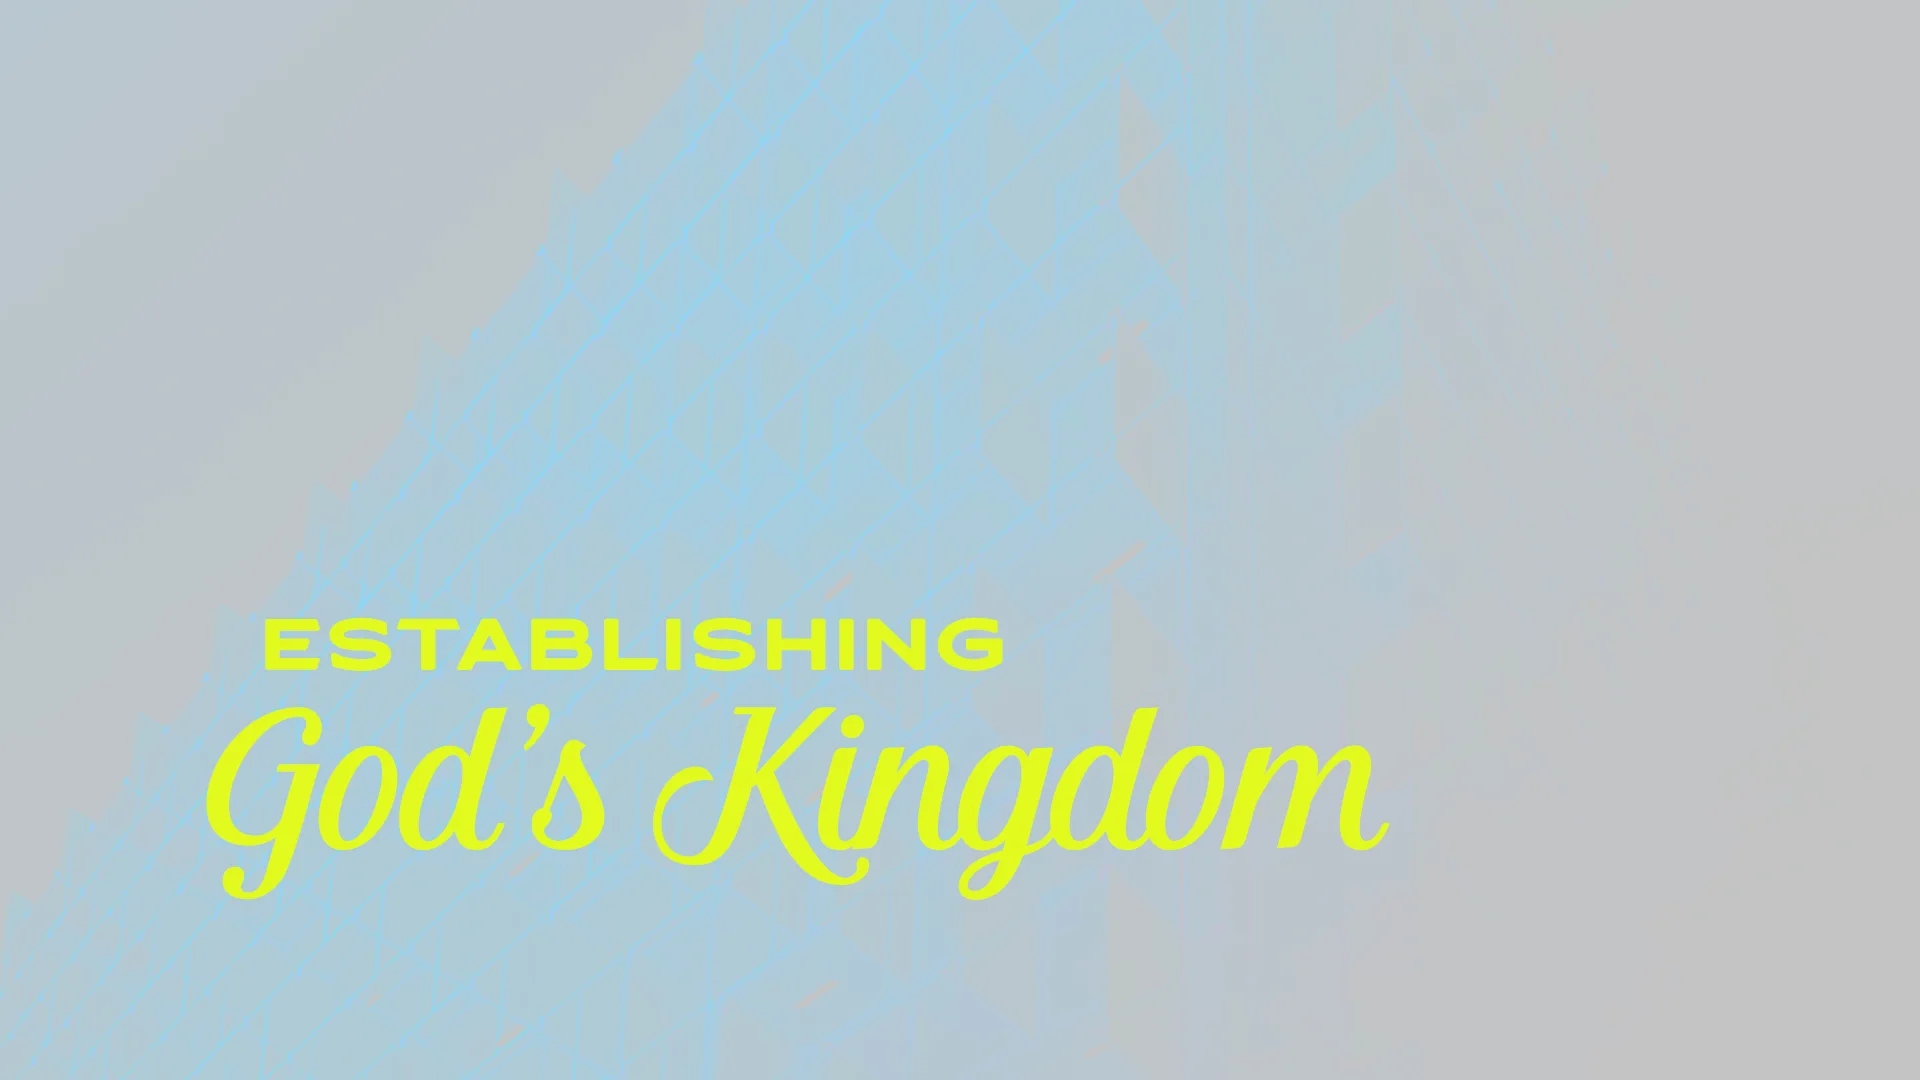 Daniel: Establishing God’s Kingdom